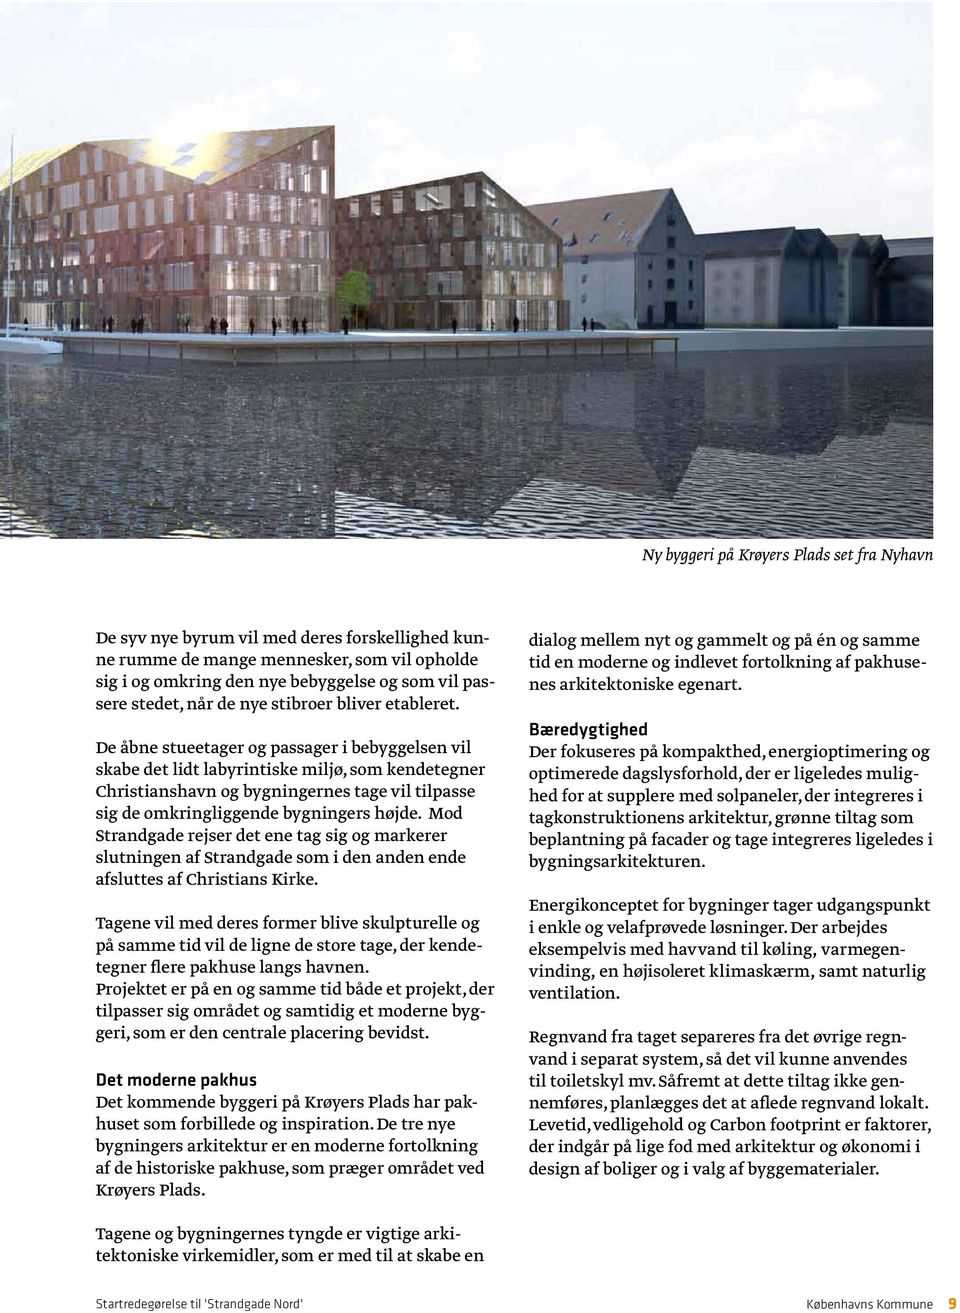 De åbne stueetager og passager i bebyggelsen vil skabe det lidt labyrintiske miljø, som kendetegner Christianshavn og bygningernes tage vil tilpasse sig de omkringliggende bygningers højde.